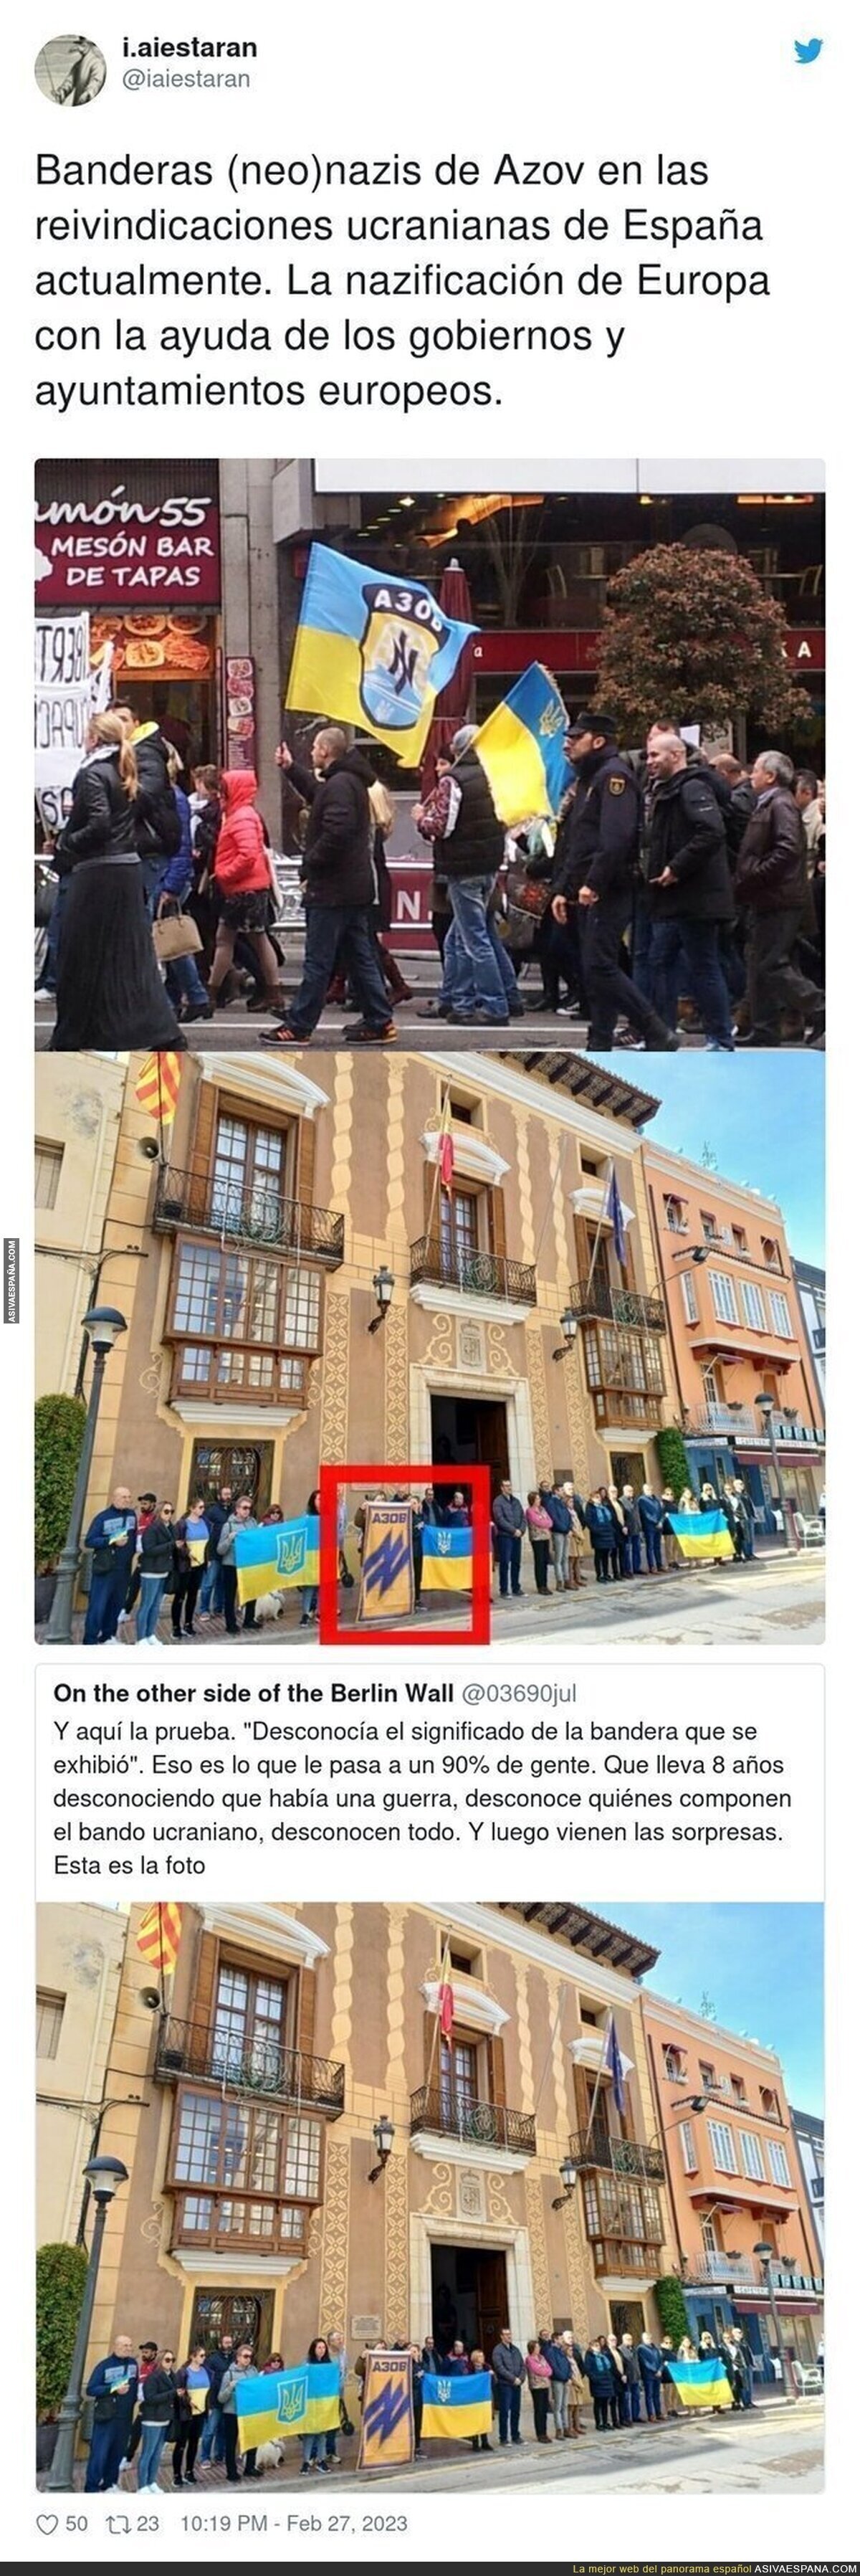 El movimiento nazi en España no tiene fin